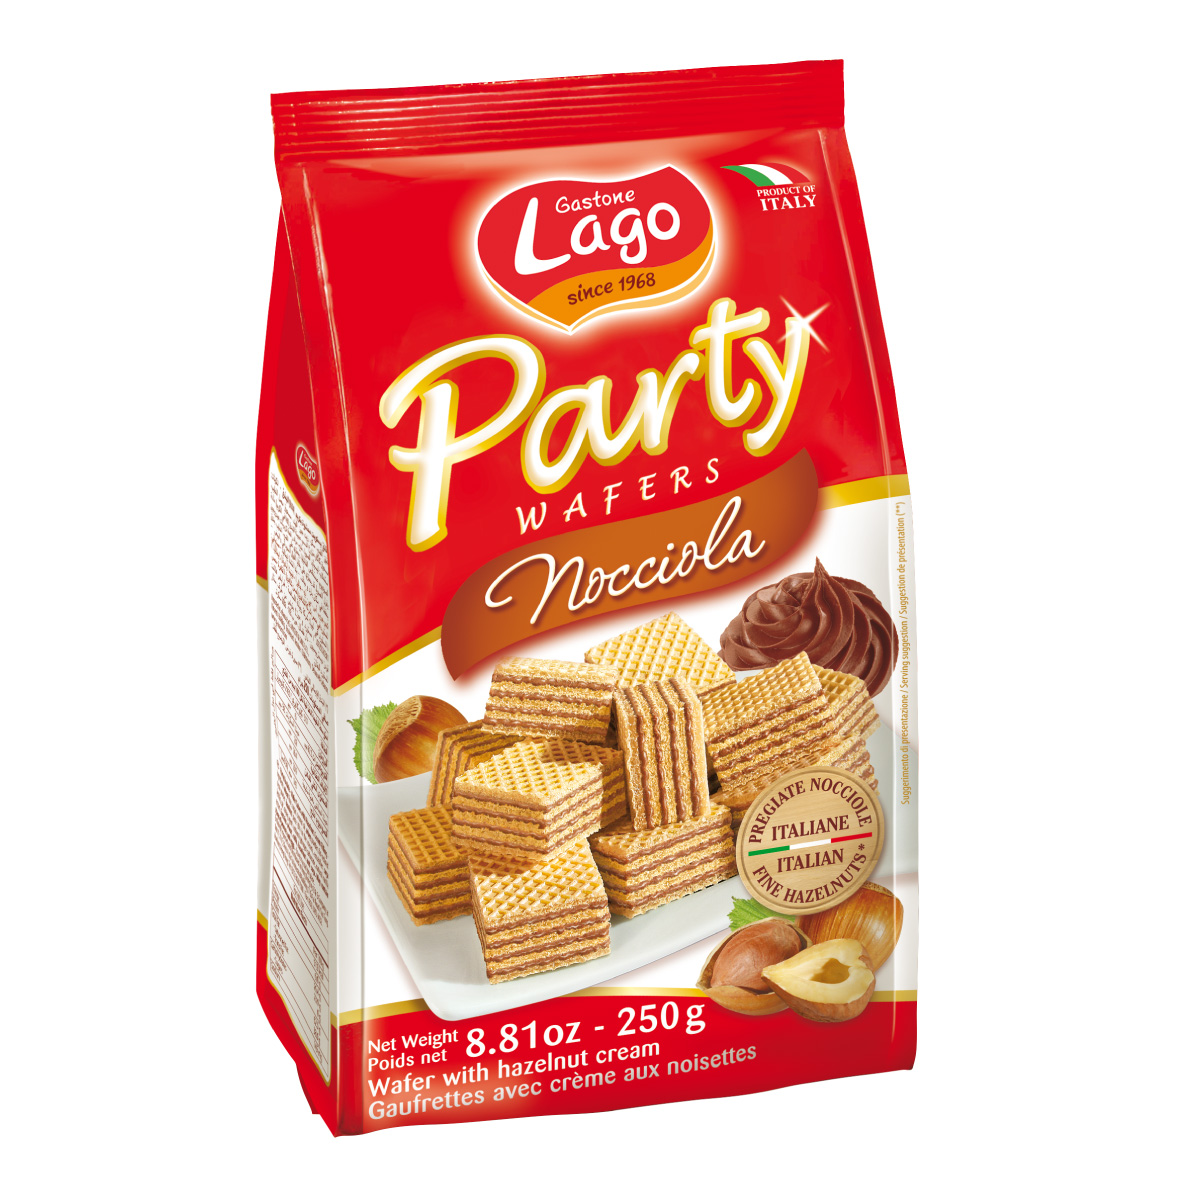 Lago Party Wafers Hazelnut 250g snacks malaysia